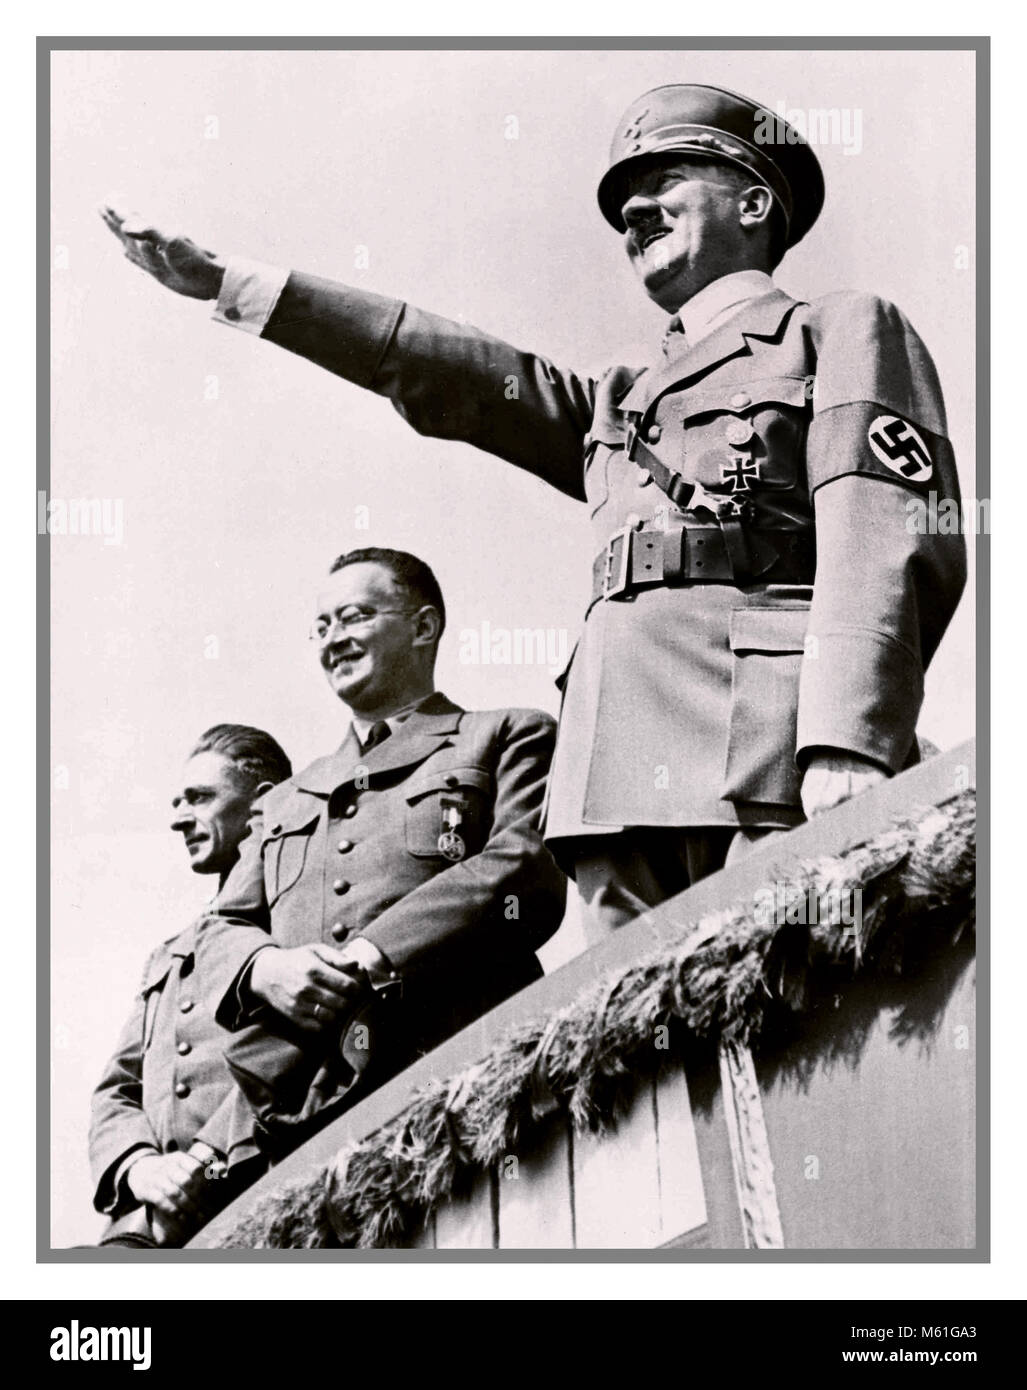 31 juillet 1938, le chancelier allemand Adolf Hitler salue une foule immense lors d'une séance de sport à Breslau, en Allemagne. Banque D'Images